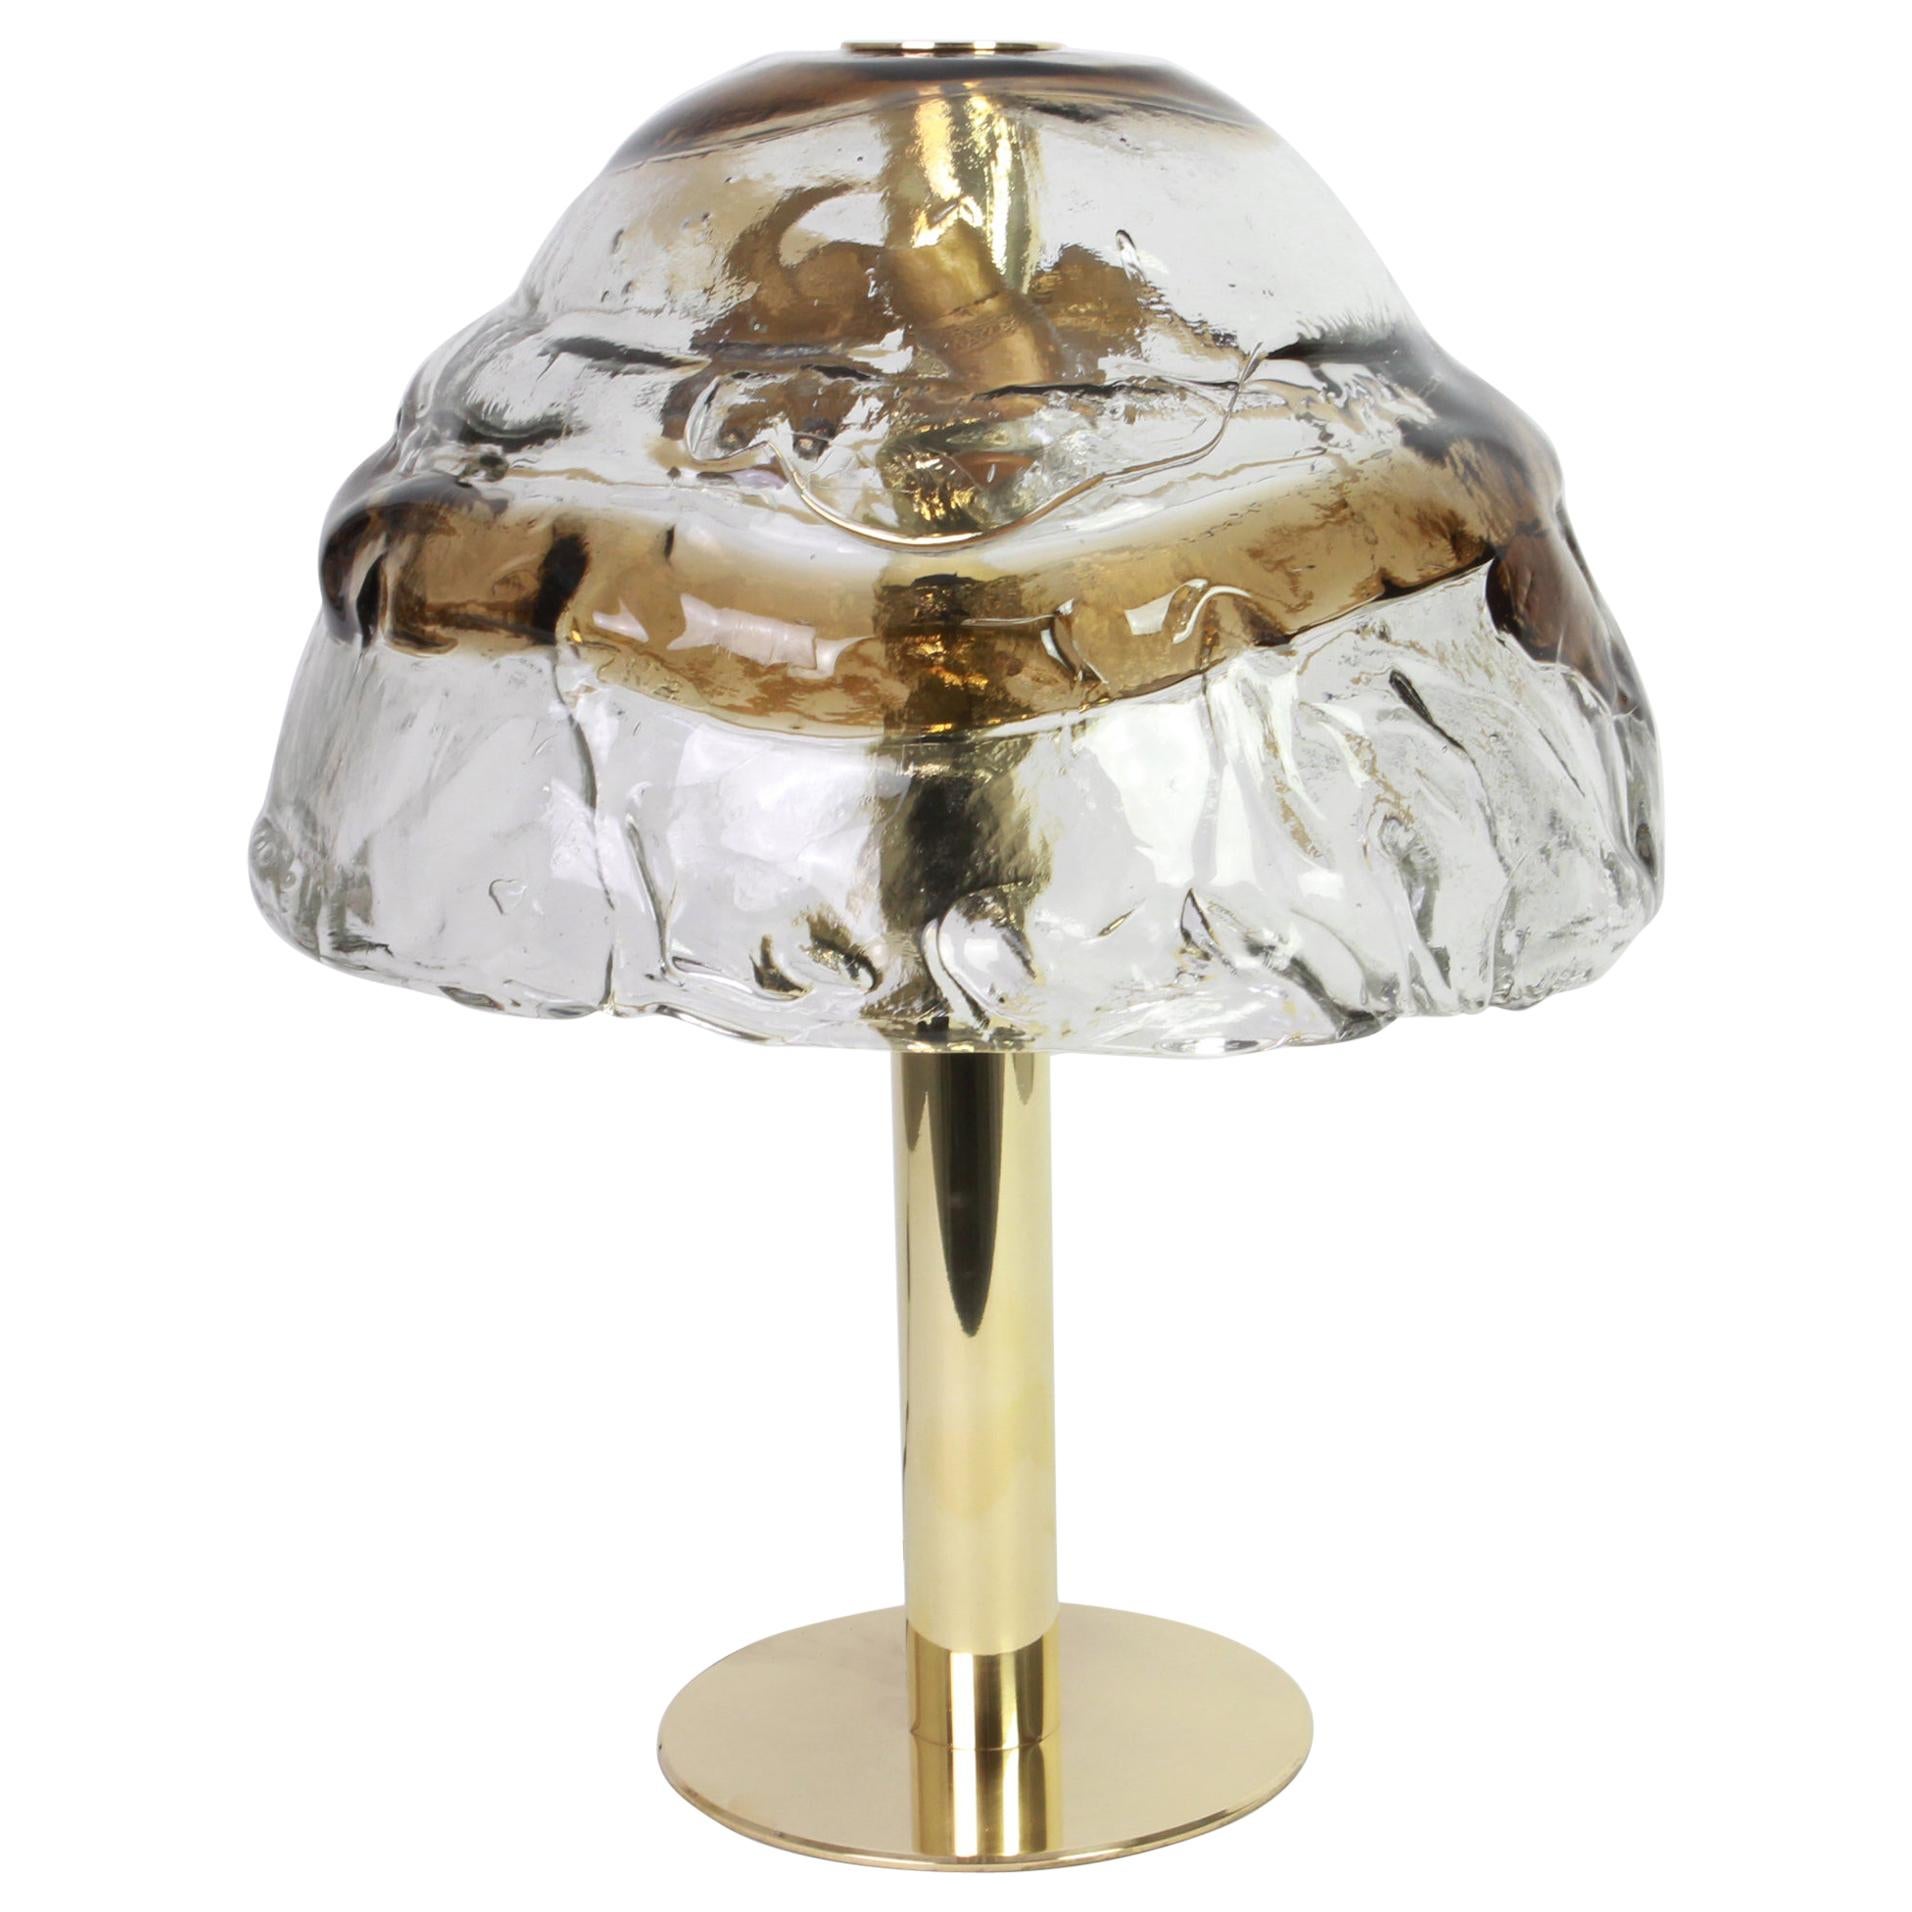 Superbe lampe de table en verre de Murano par Kalmar, 1970
Panneaux en verre de Murano, en cristal clair torsadé avec une bande de couleur ambre légèrement dorée.

Il nécessite 3 ampoules standard E27. (Max 50 watts chacun)
2 articles sont